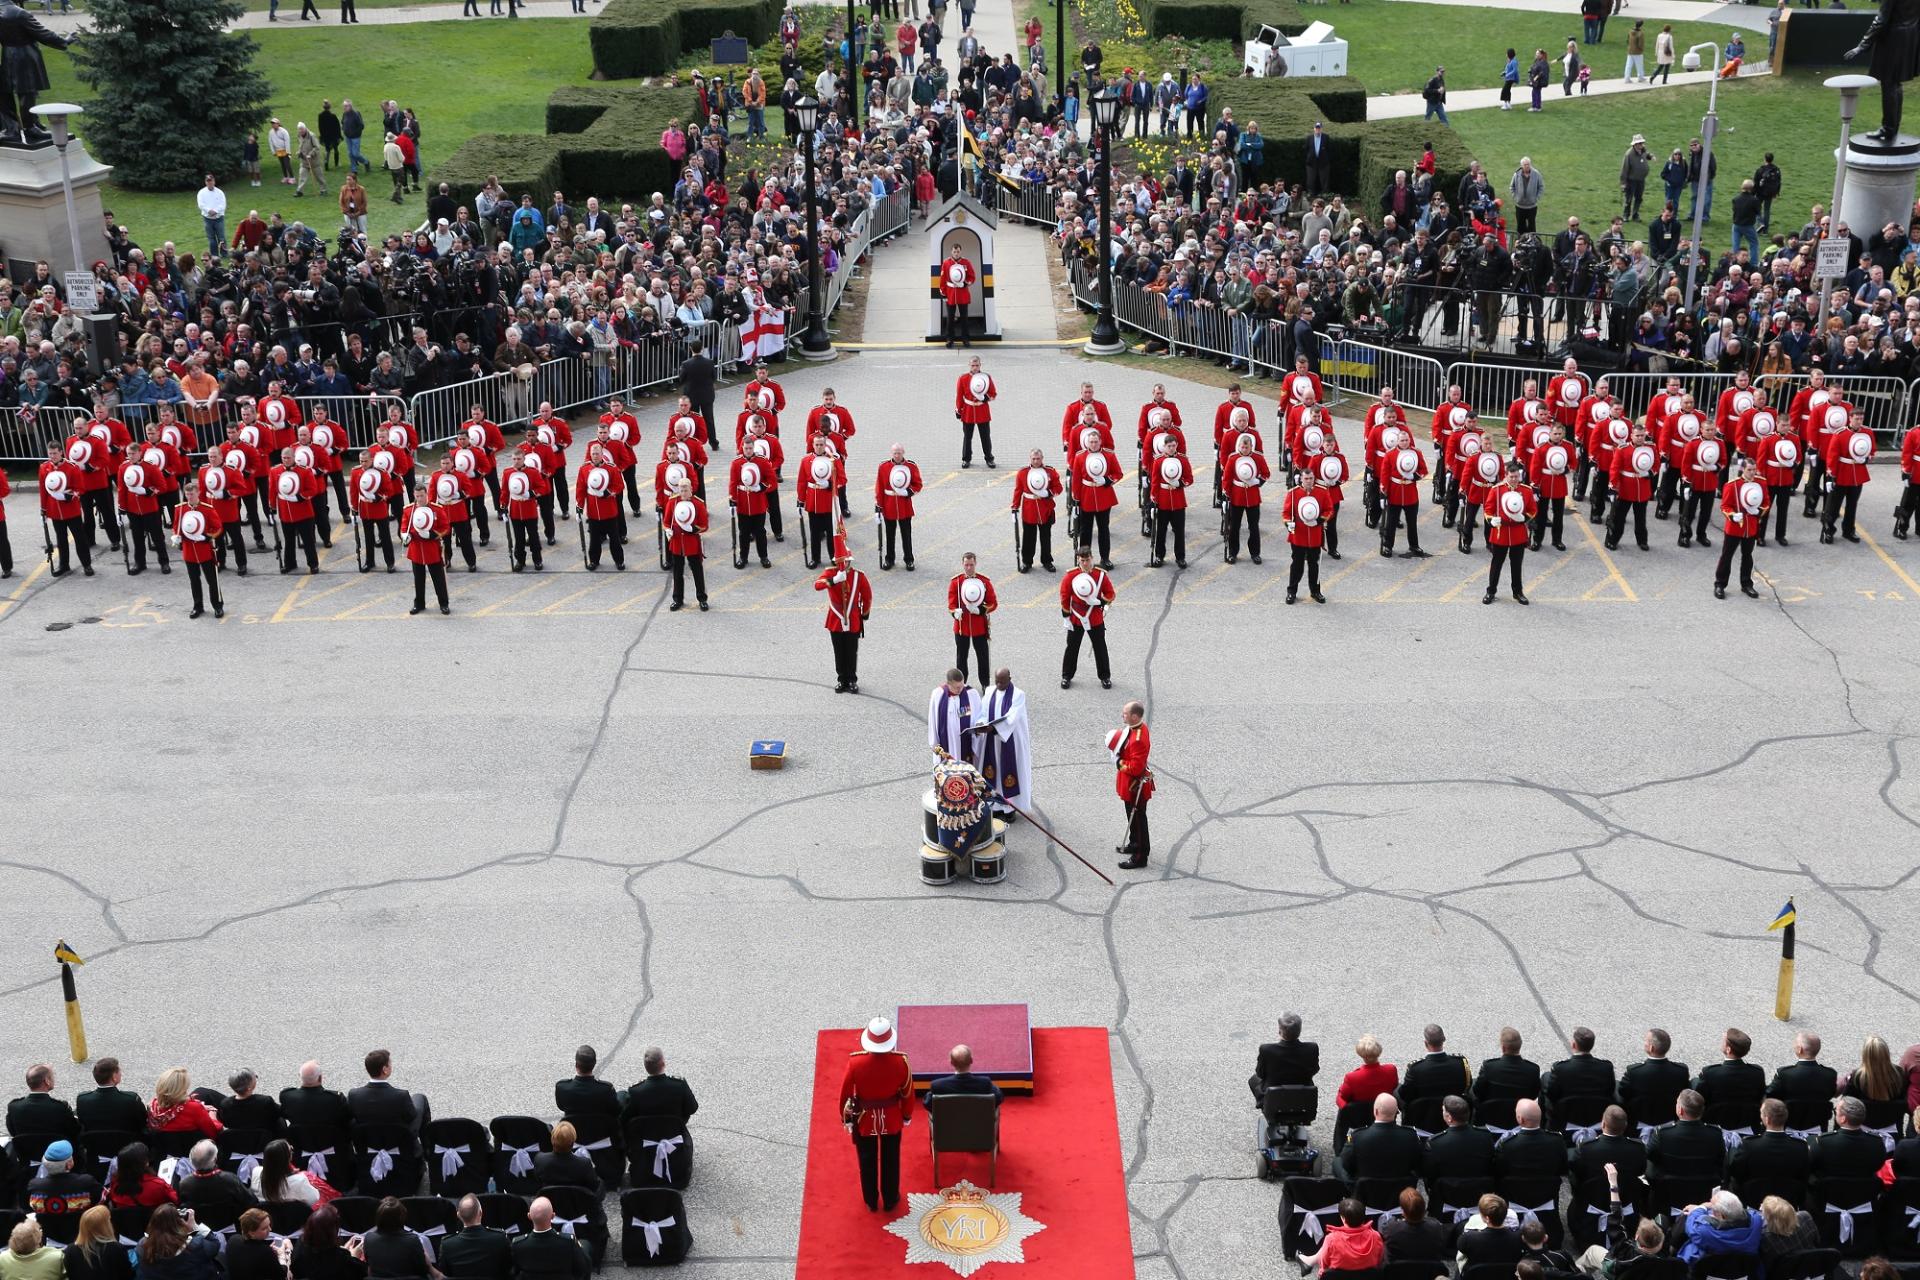 Le duc d’Édimbourg observe la cérémonie de présentation des nouvelles couleurs régimentaires sur le terrain de l’Assemblée législative de l’Ontario, 2013 